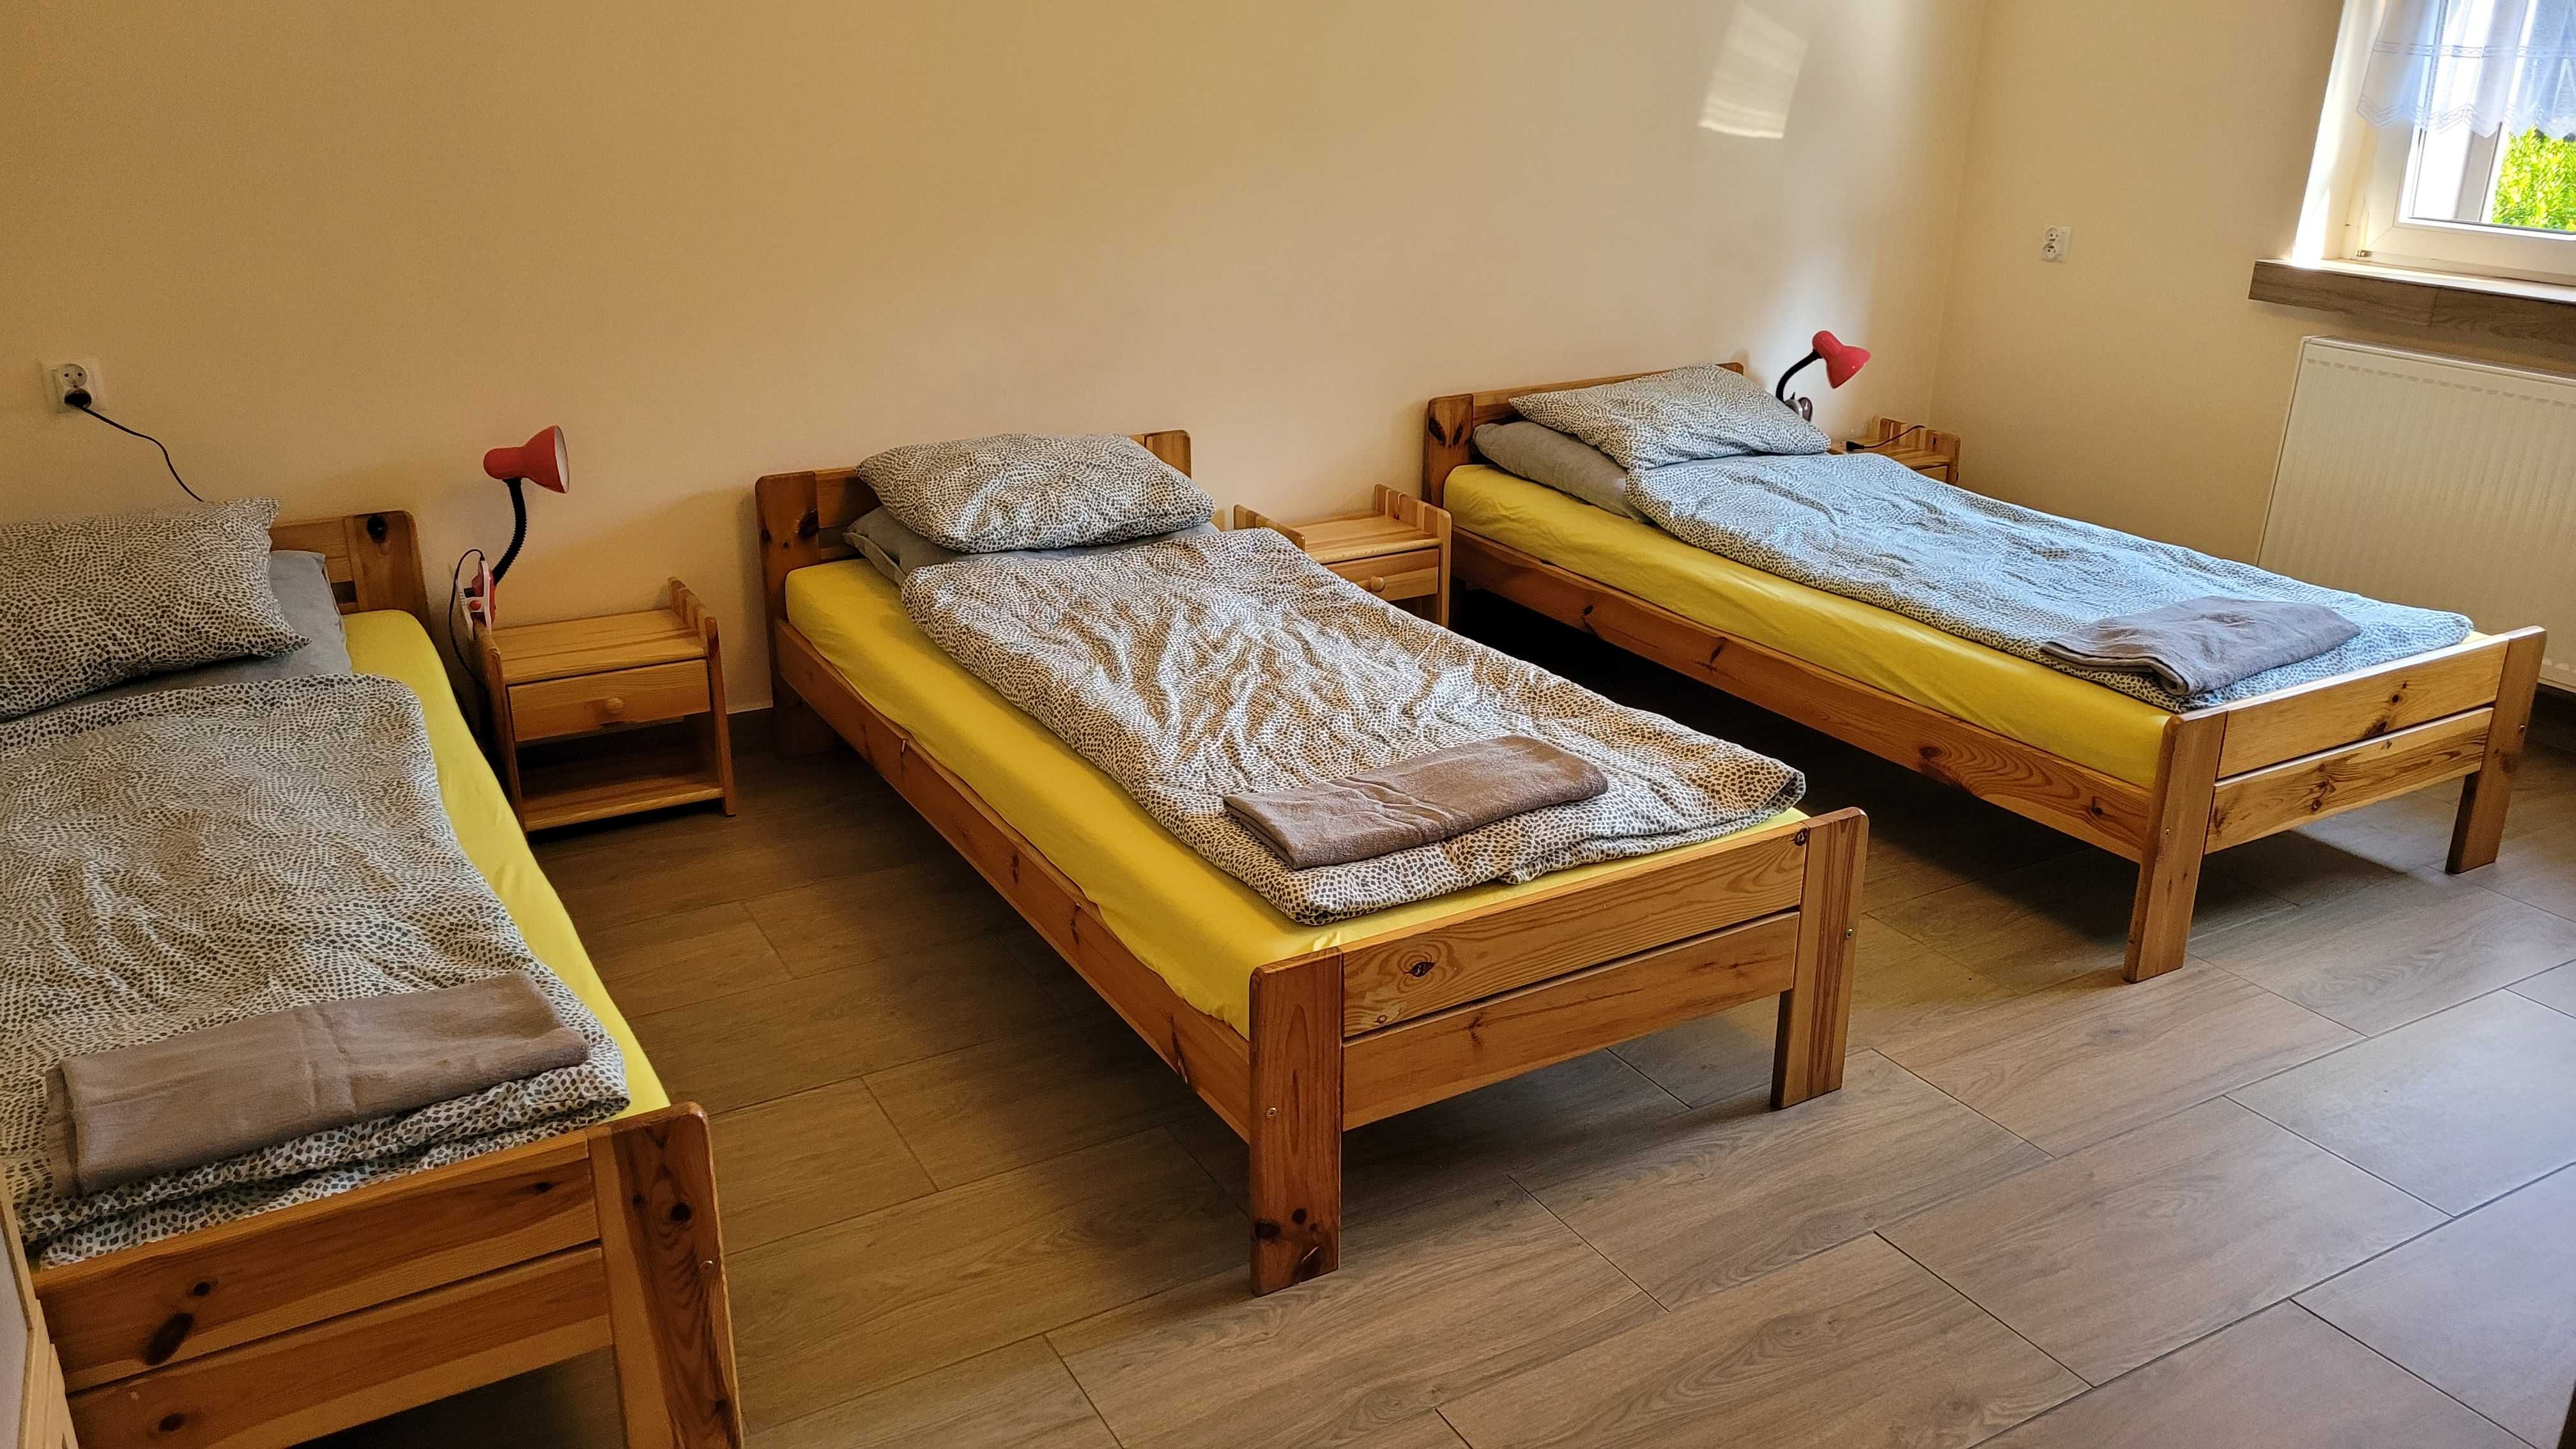 Noclegi Mikołów, dom pokoje kwatery mieszkanie hostel pracowników firm